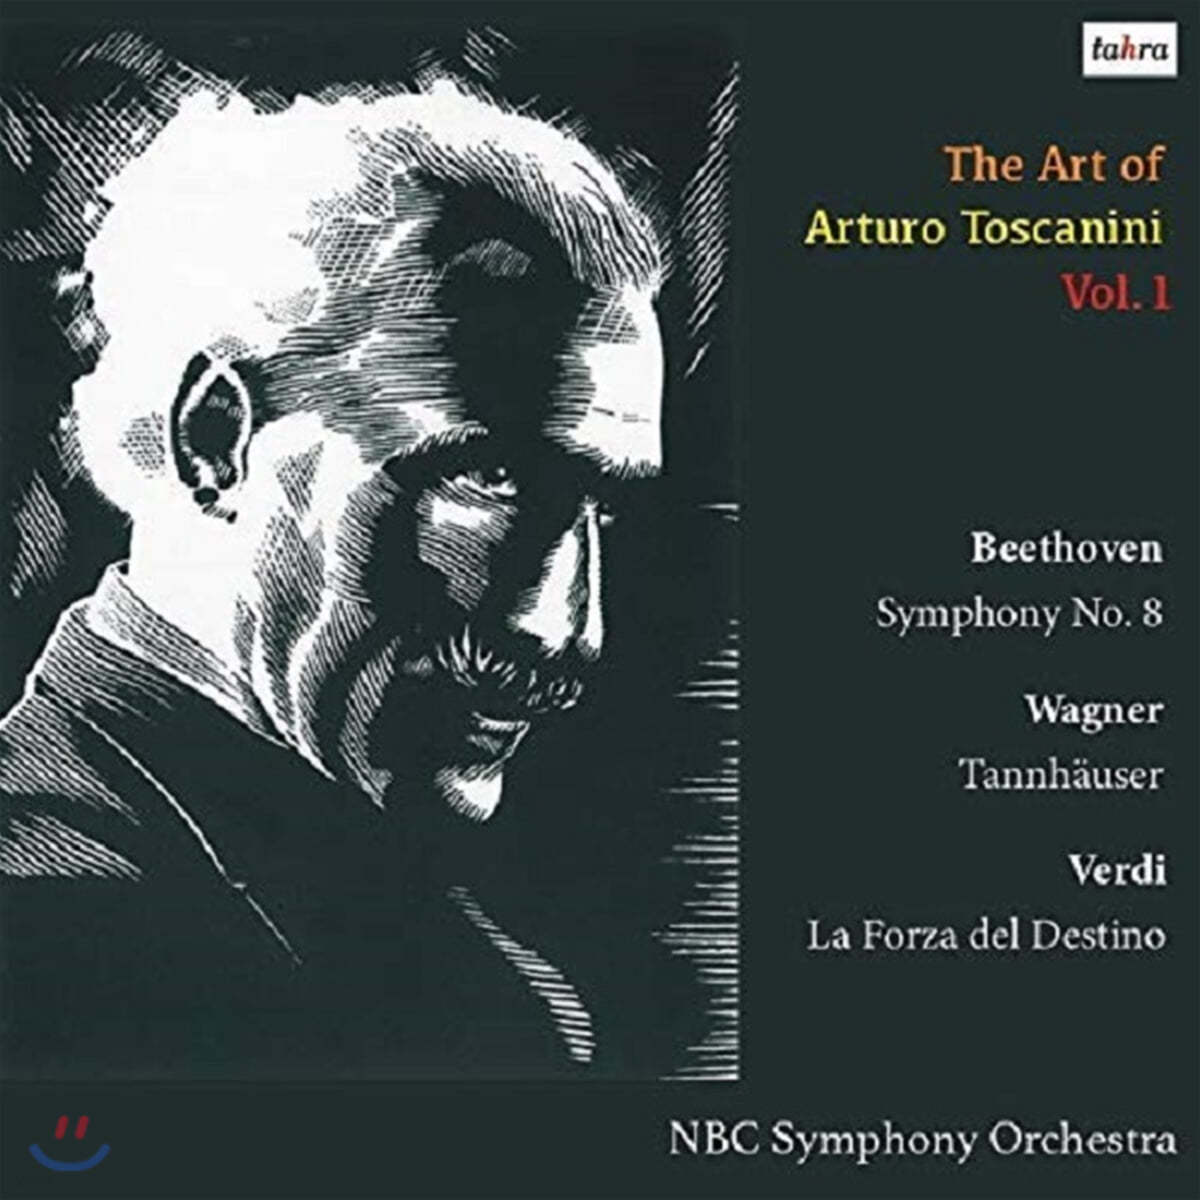 아르투로 토스카니니의 예술 1집 (The Art of Arturo Toscanini Vol. 1)